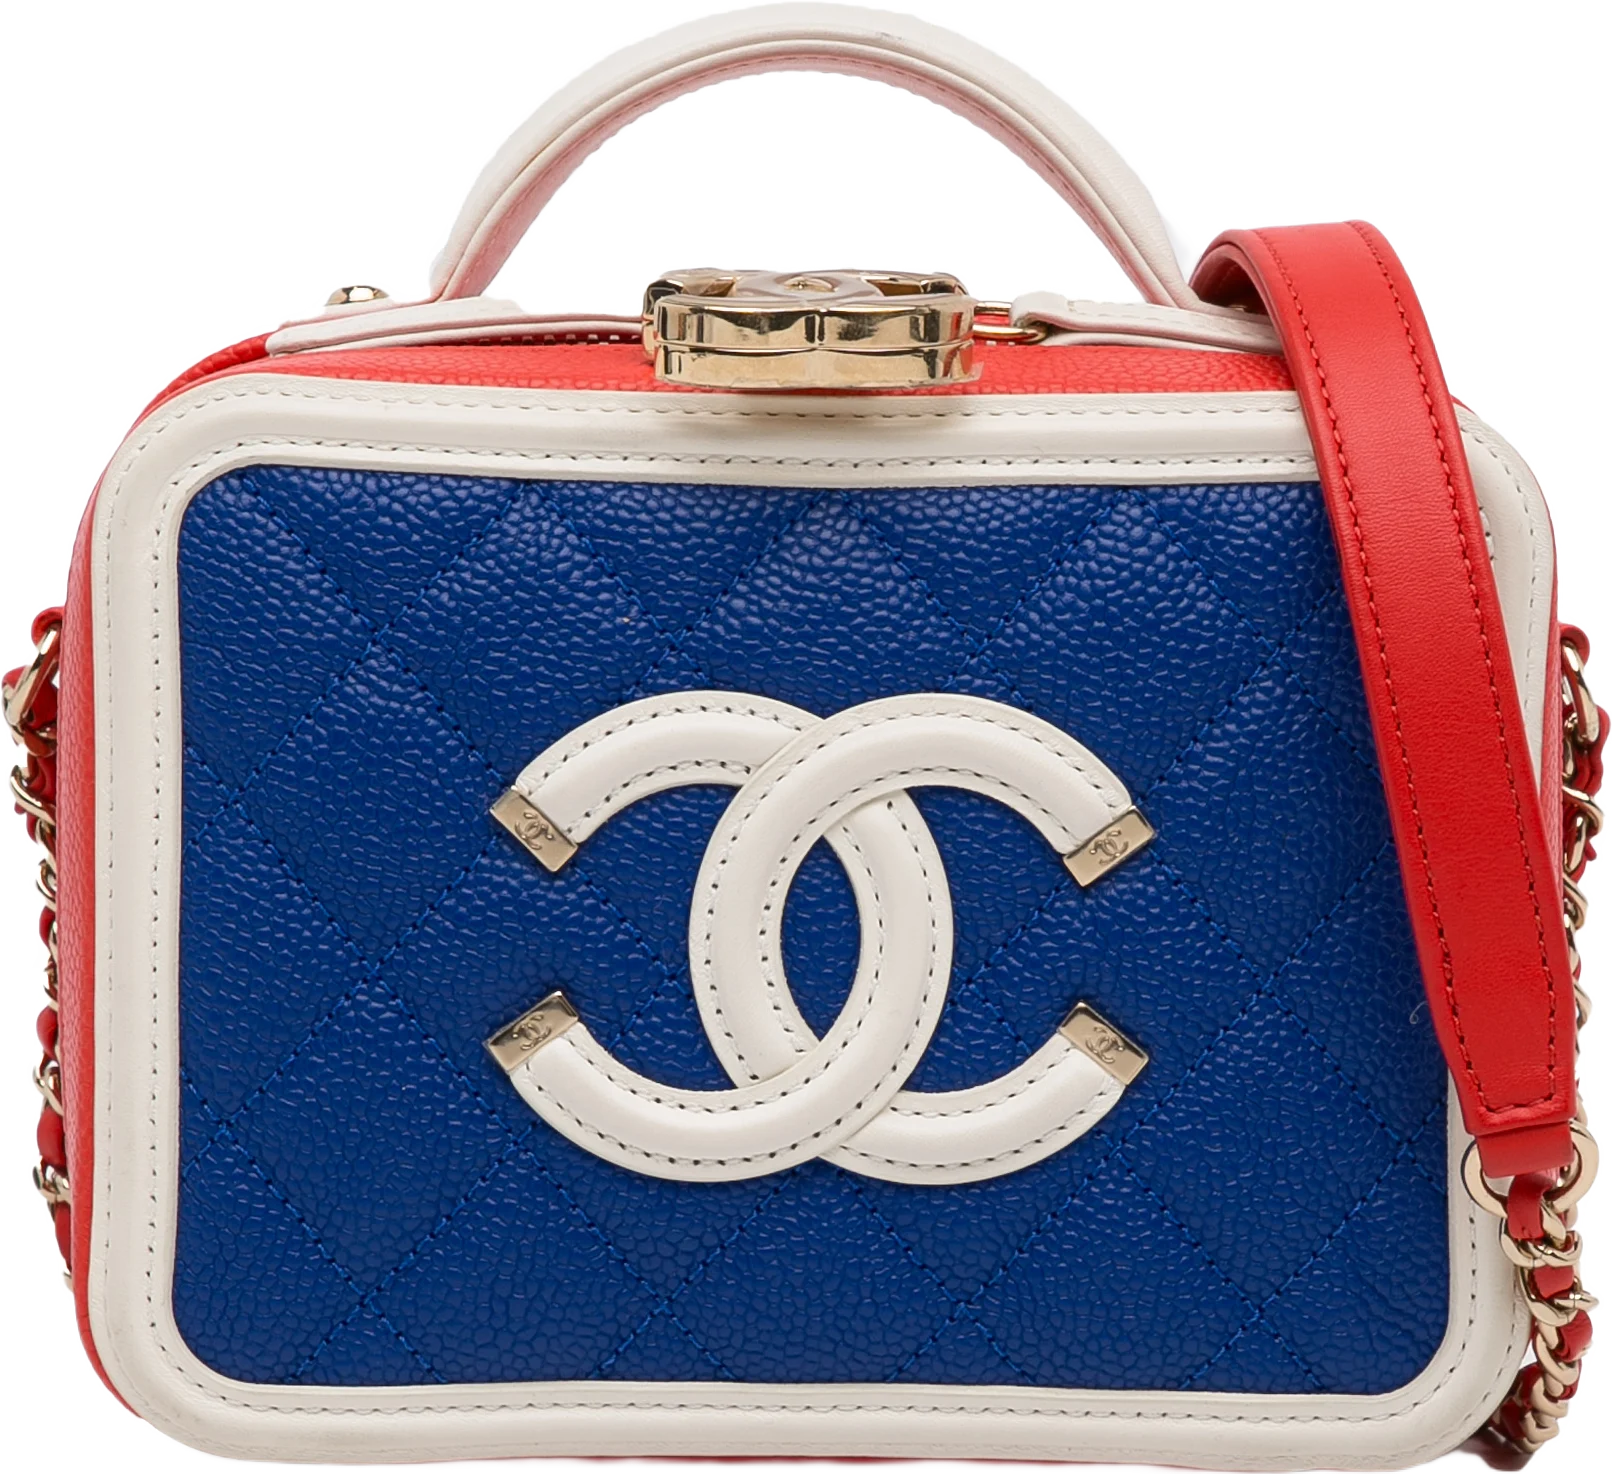 Chanel Small Tricolor Caviar Cc Filigree Vanity Case